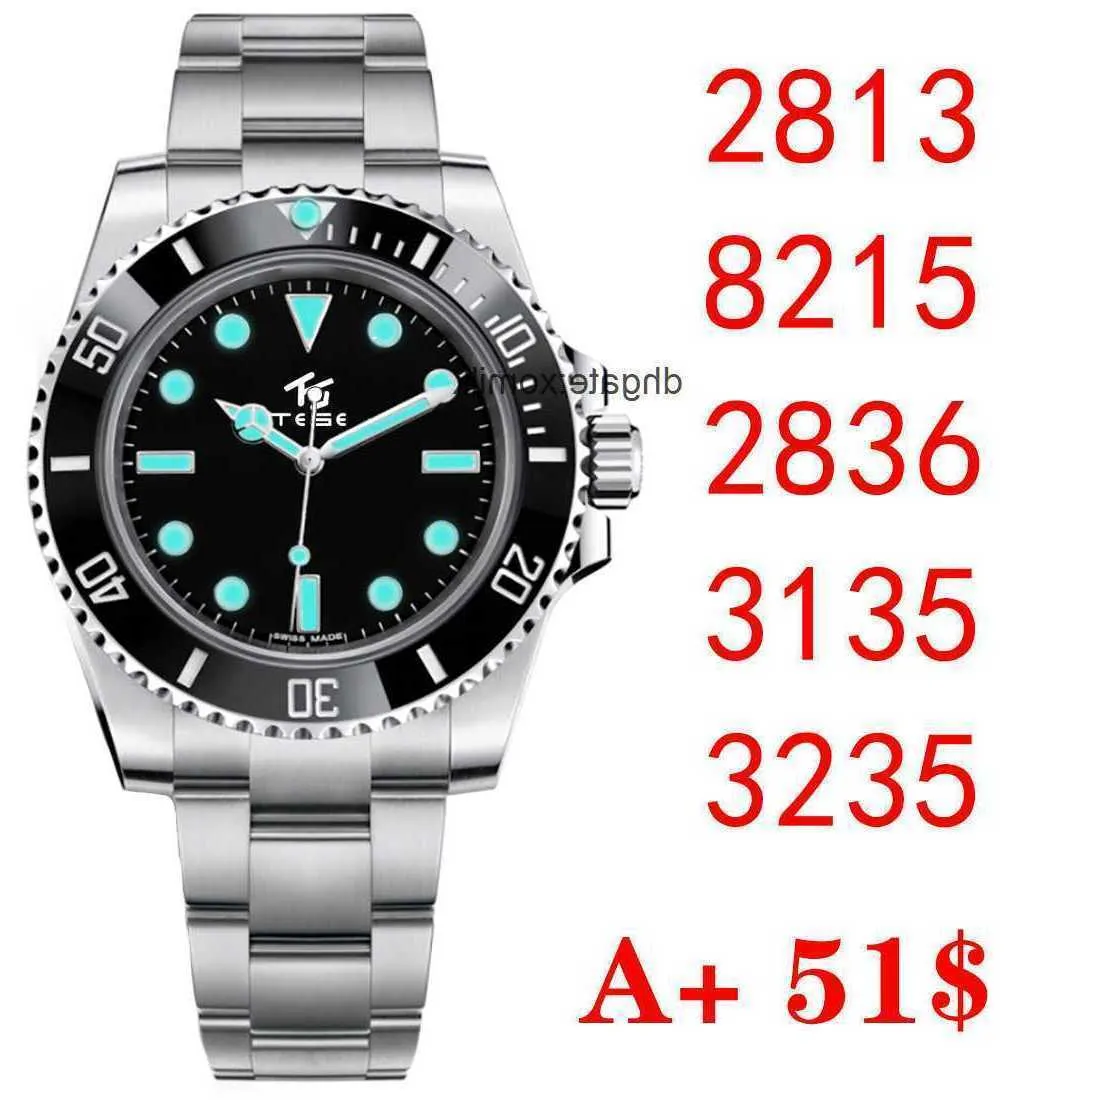 Noobnf 16610 Relojes deportivos de lujo para hombre Eta 2836 3135 Automático 904l Acero inoxidable Negro Luminoso Impermeable Buceo 40 mm 41 mm Reloj de pulsera limpio VYL9